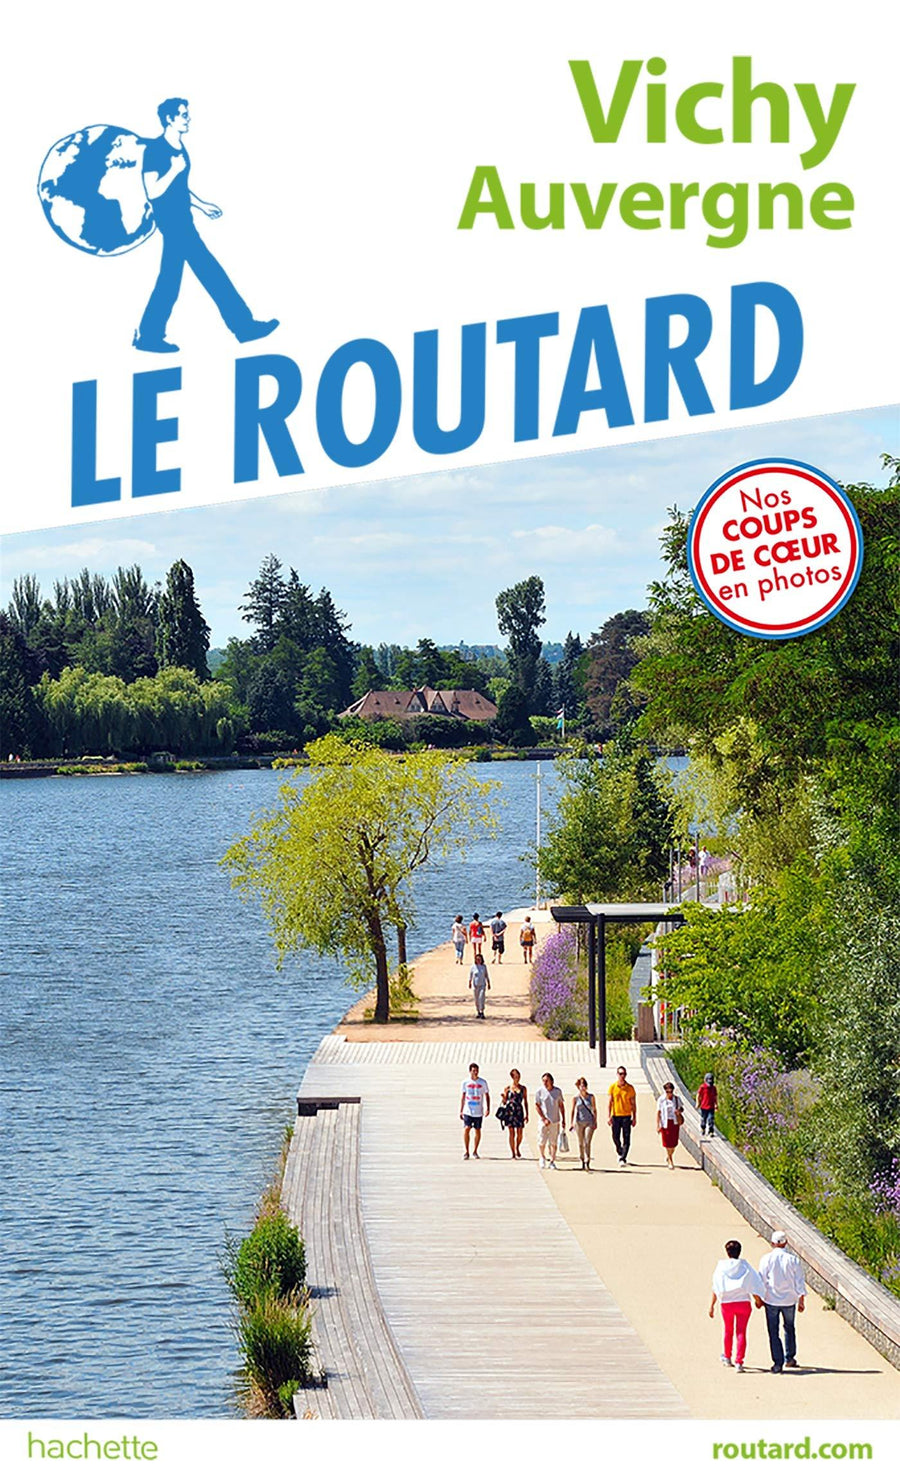 Guide du Routard - Vichy, Auvergne | Hachette guide de voyage Hachette 